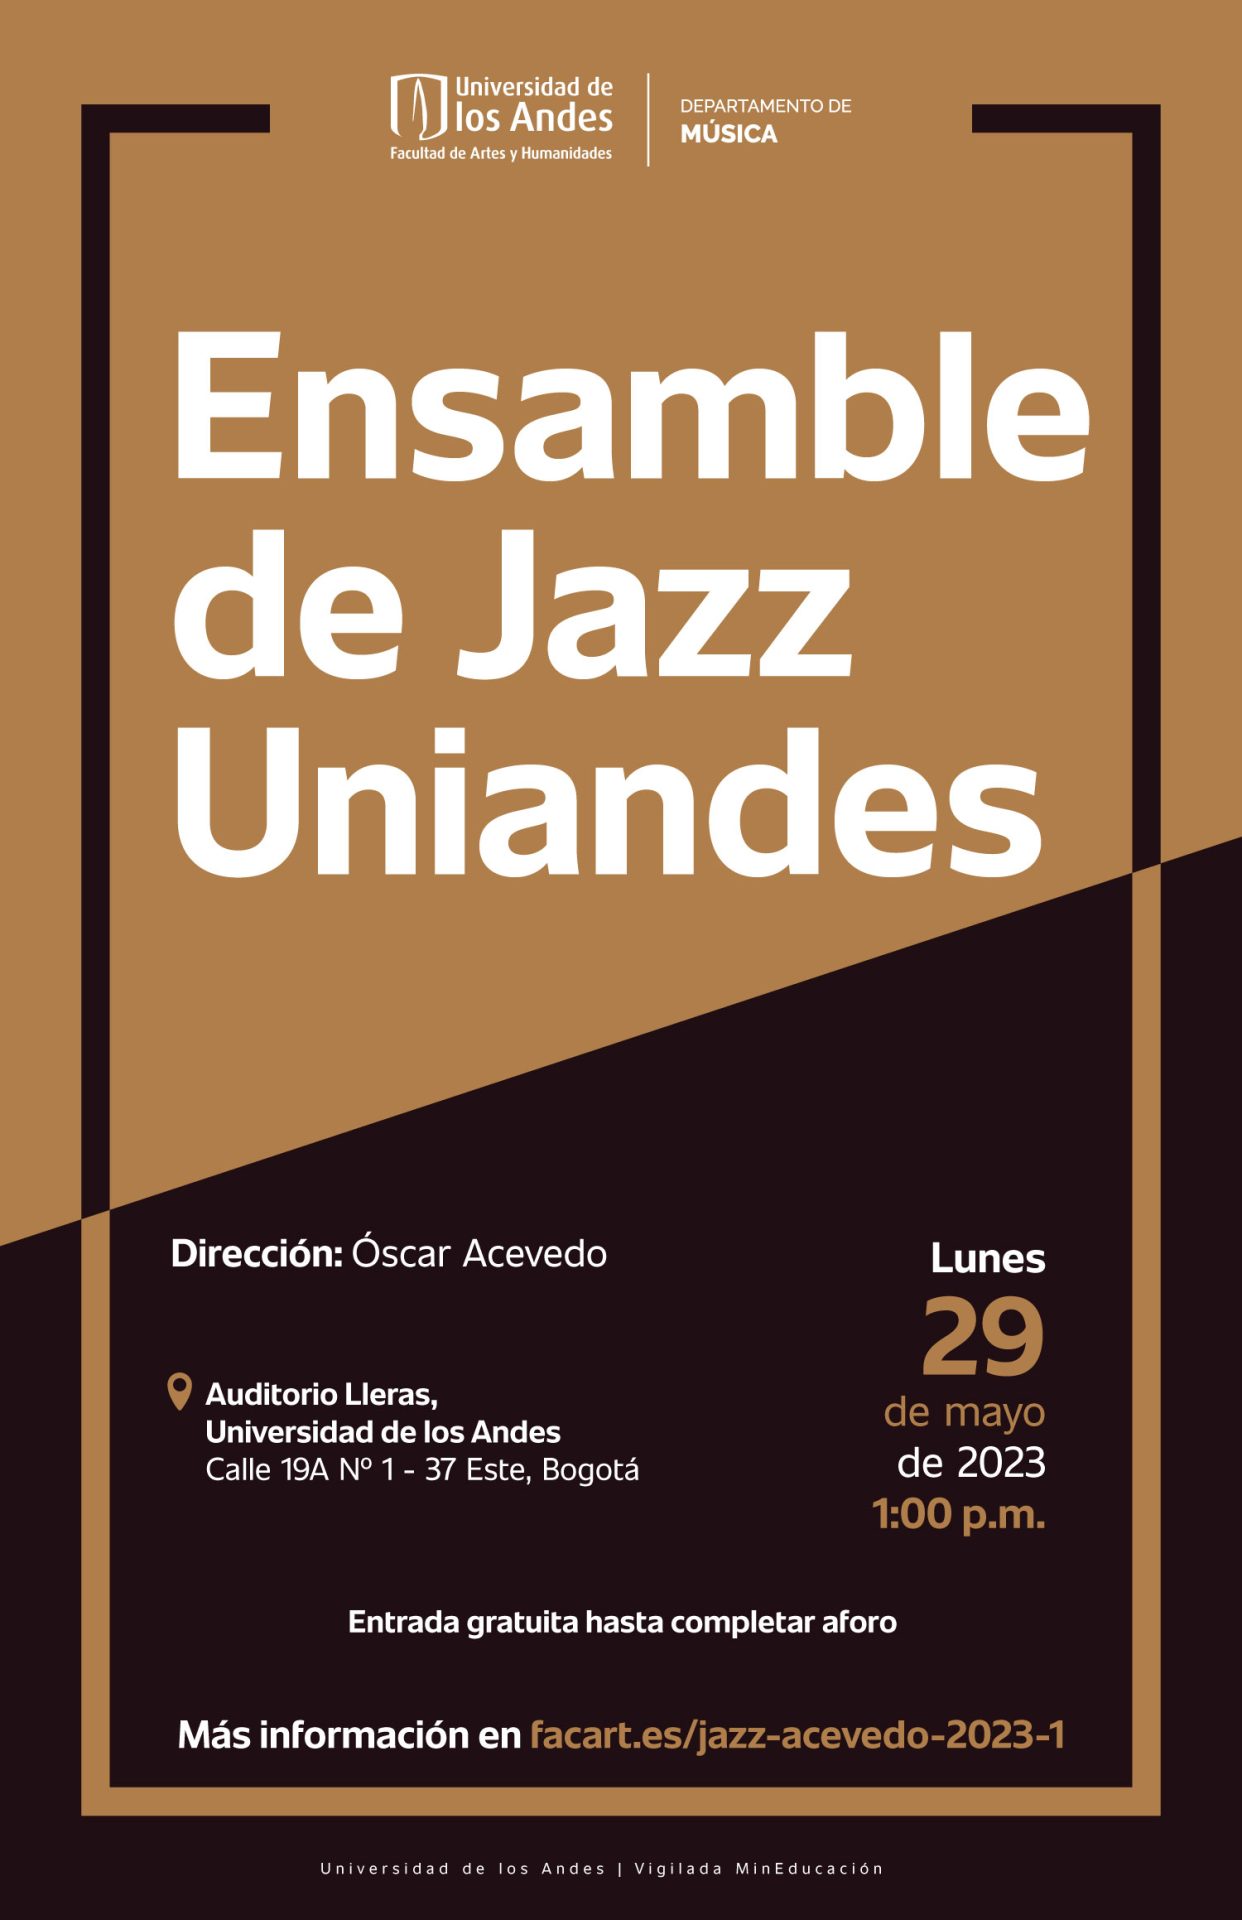 Lunes 29 de mayo de 2023 a la 1:00 p.m. en Auditorio Lleras, Universidad de los Andes